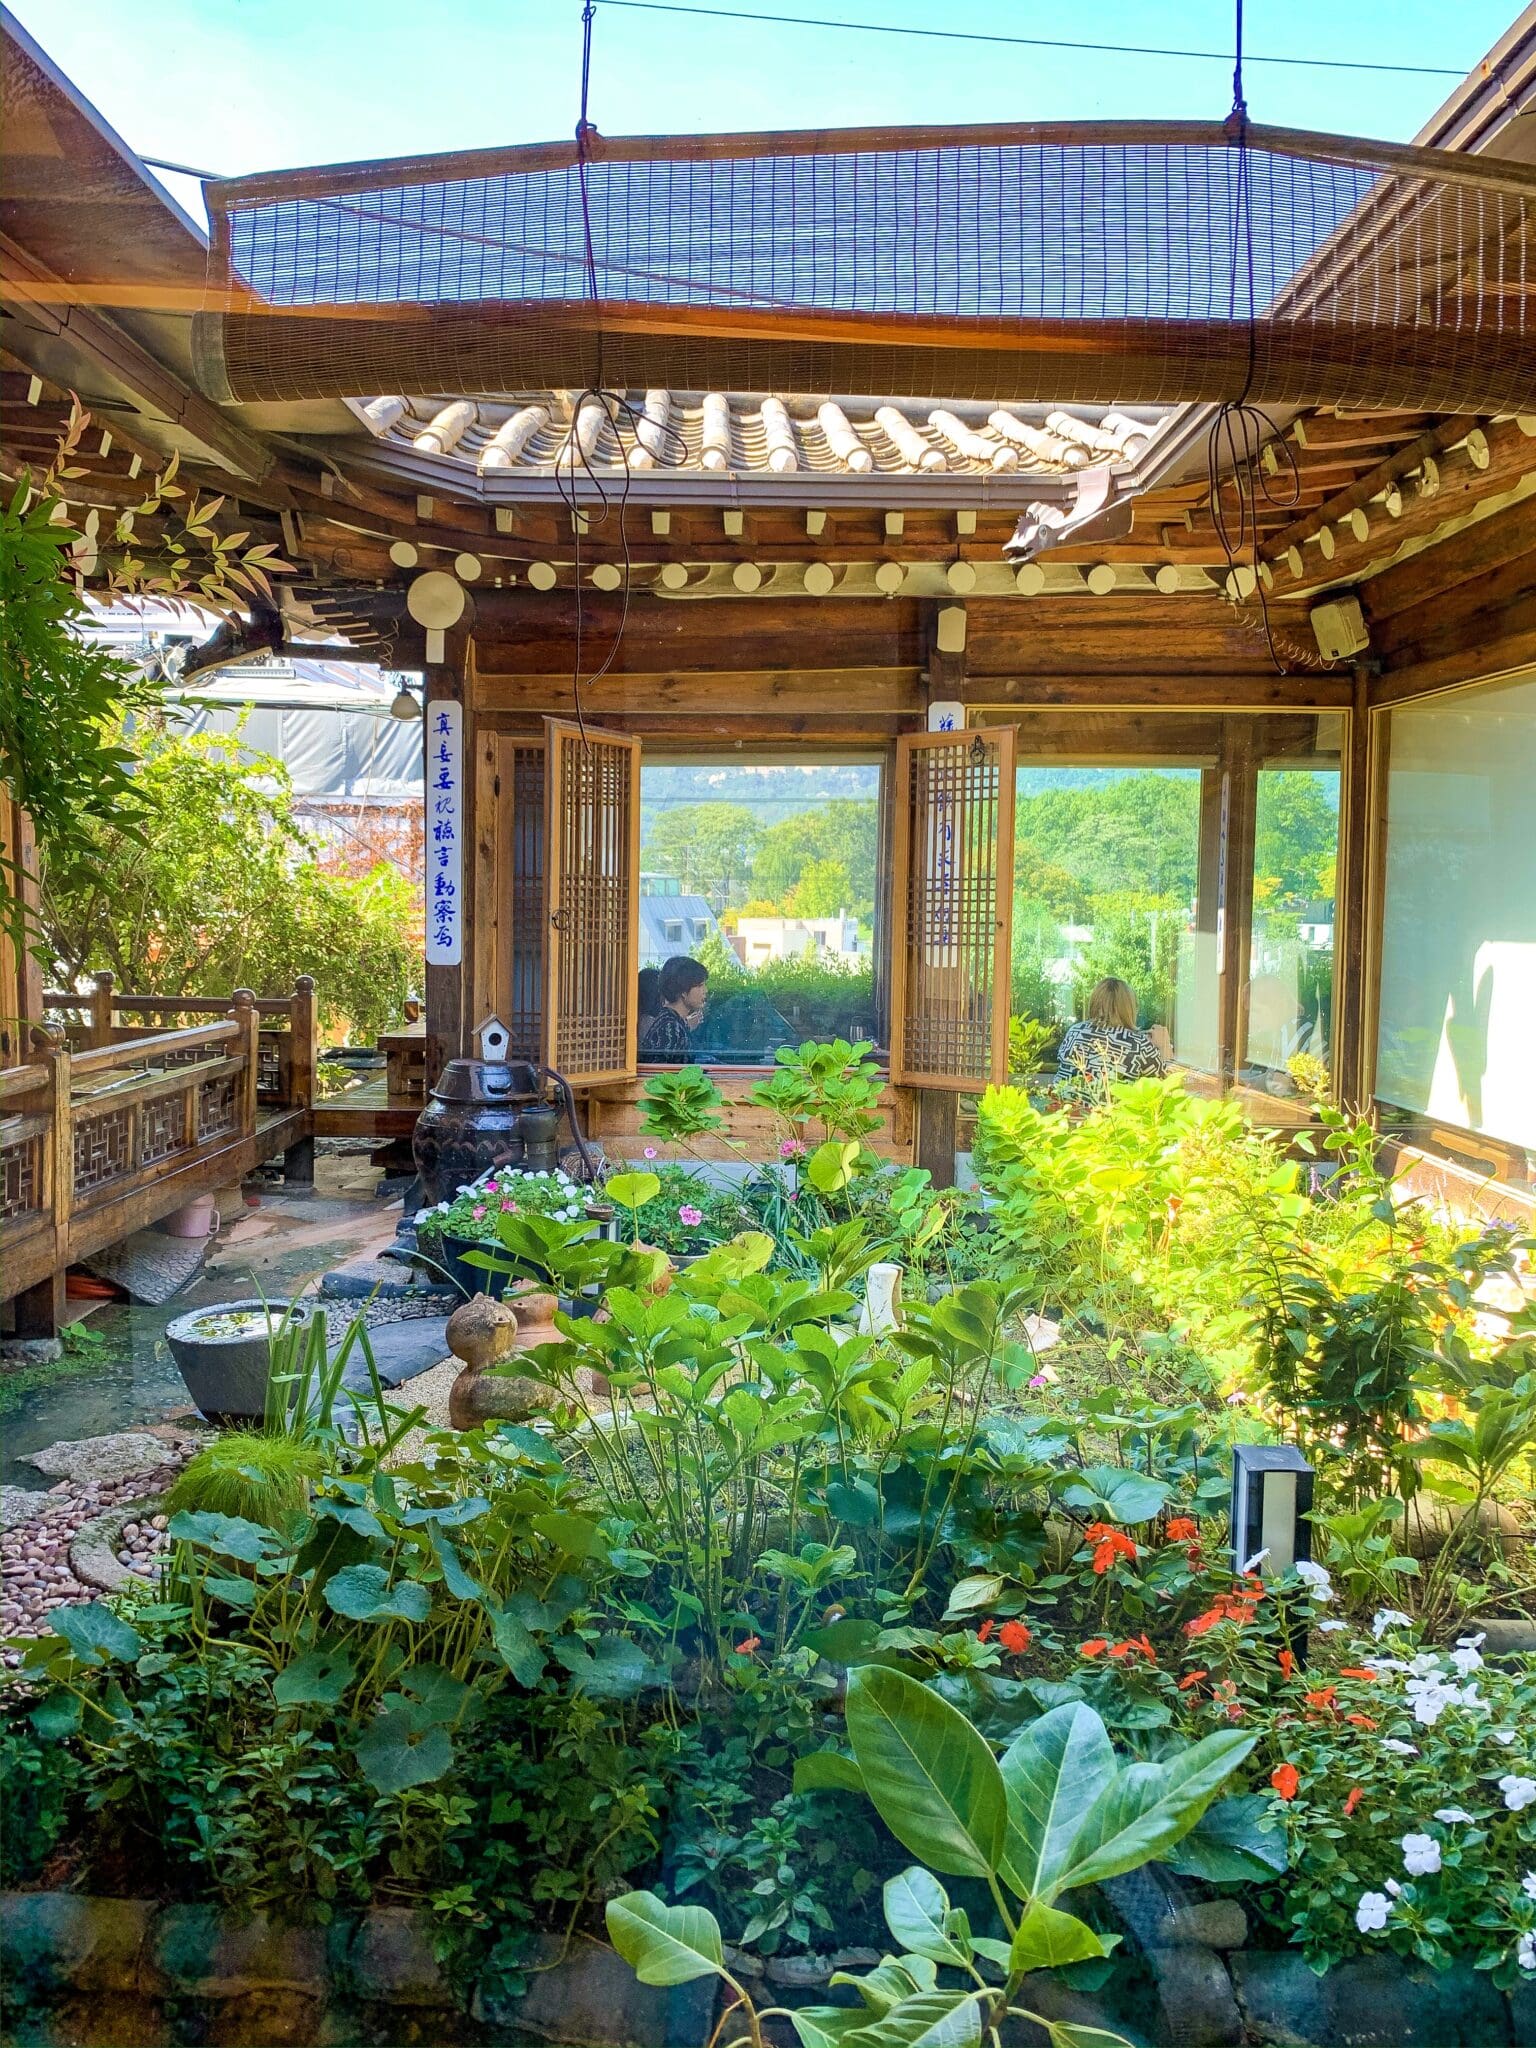 Cha-teul teahouse courtyard garden